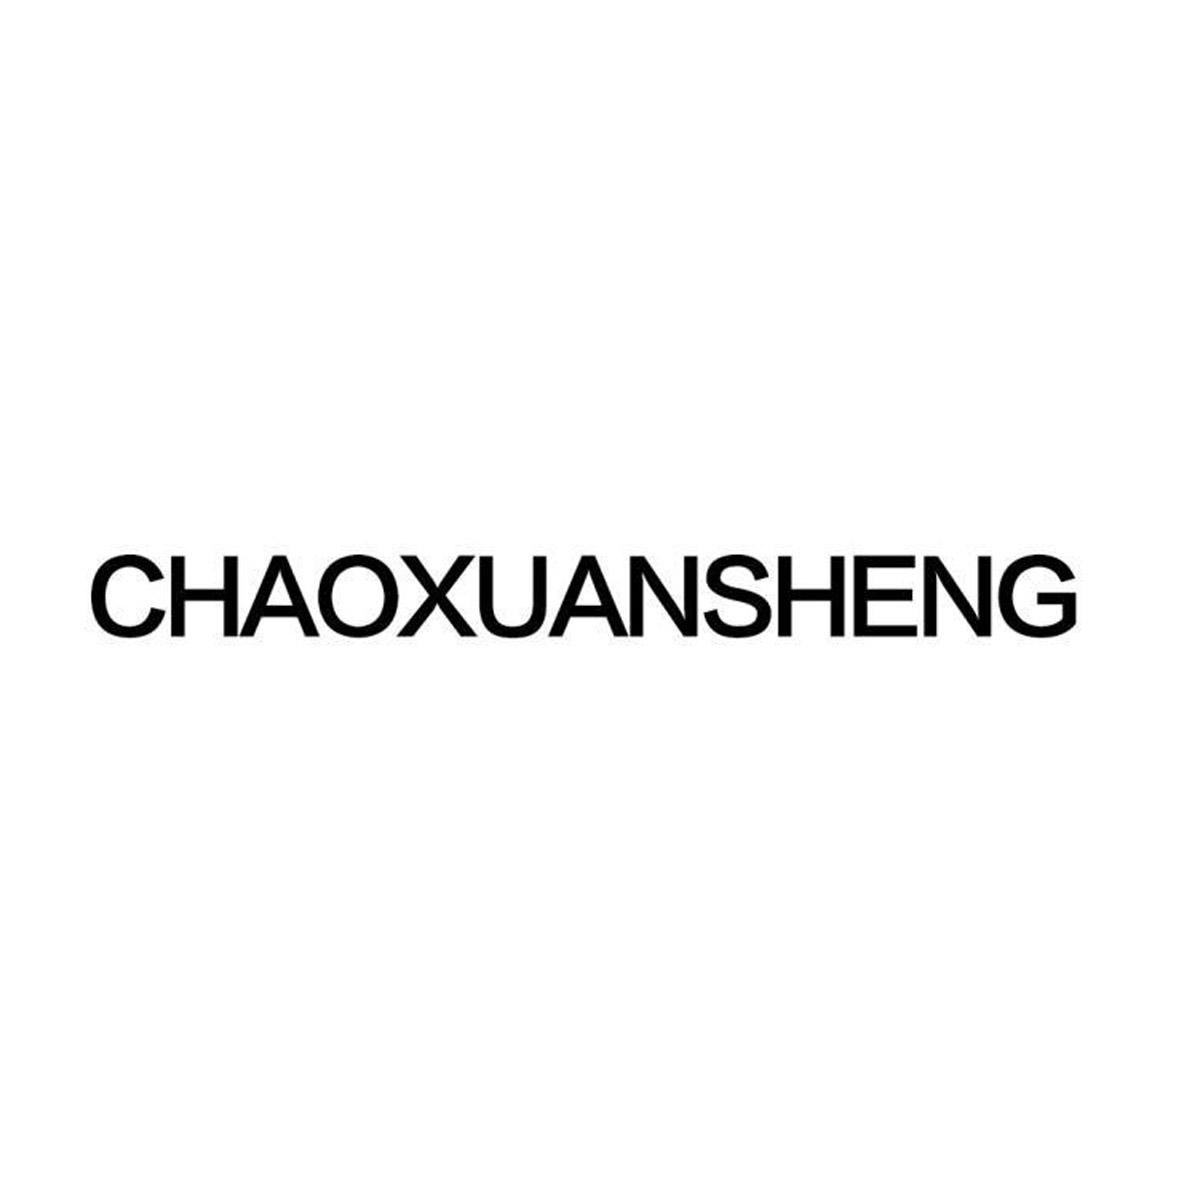 CHAOXUANSHENG